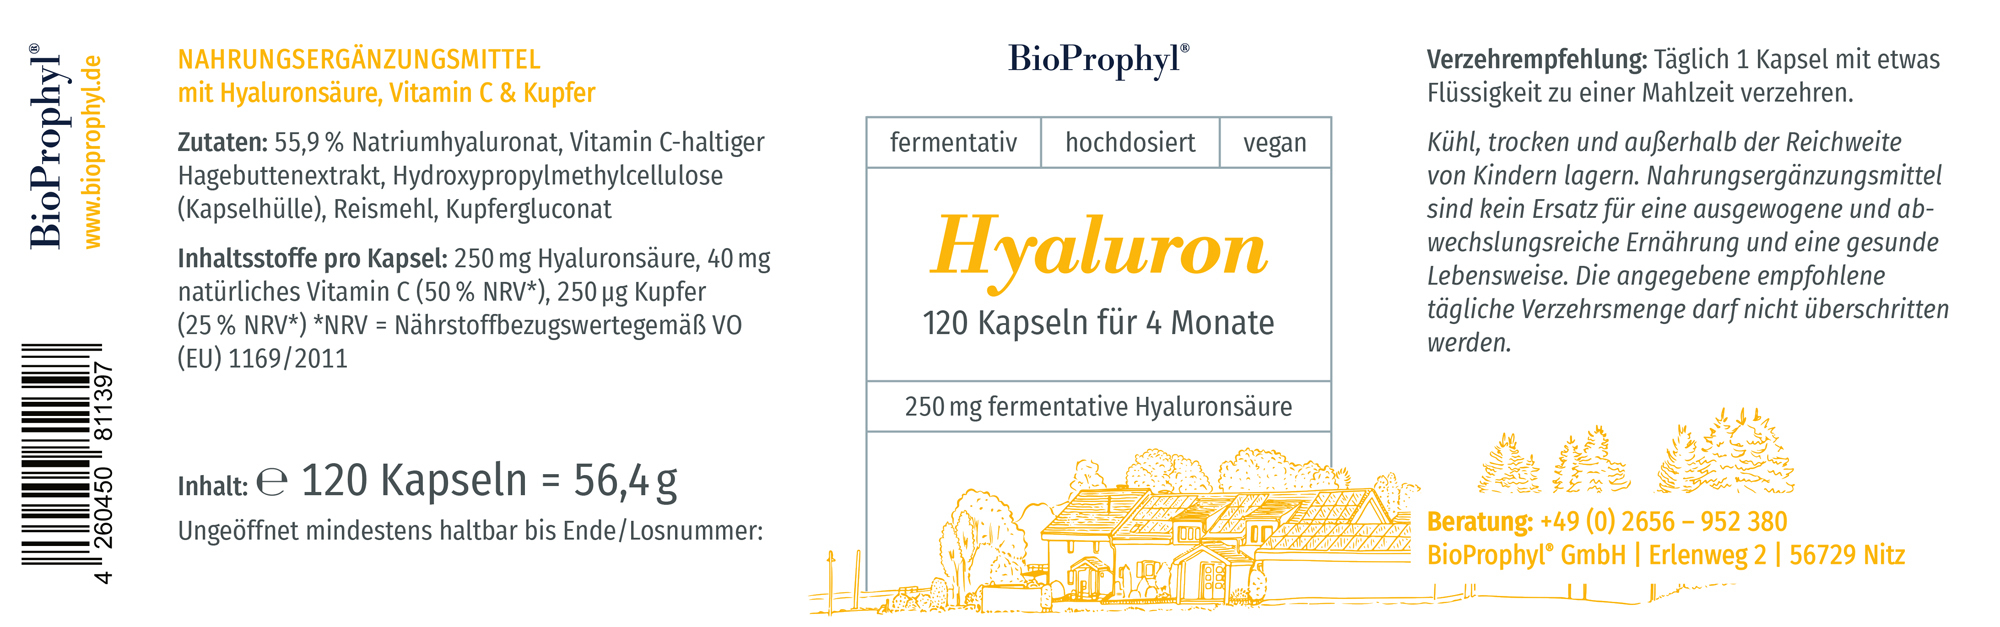 Produktetikett von Hyaluron mit 120 Kapseln